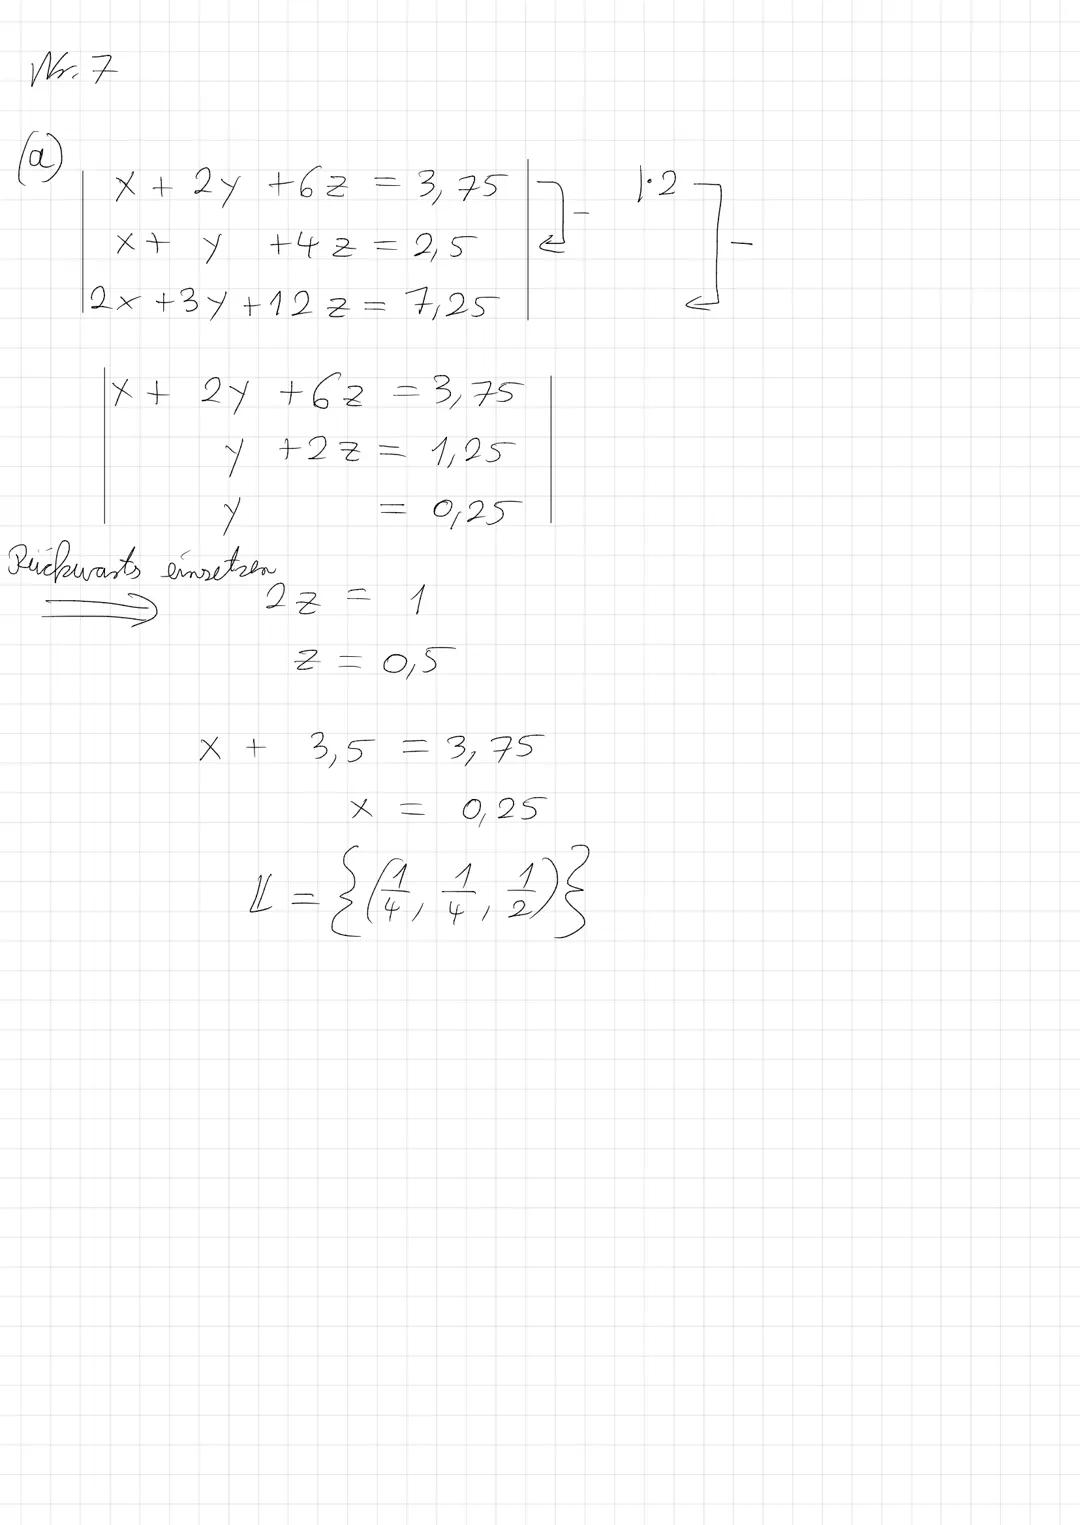 (1)
3 x + 4y
12 x
(3)
3x + 4y
16
x
x
чу
X
=5
>
= 4:2
+4y=5 X eingesetzt |-6
= 2
= -1
= 5
= 2
=
X
14 = {(61-4)}
-
1
2x+4y = 12
1-2x-3y = -10
